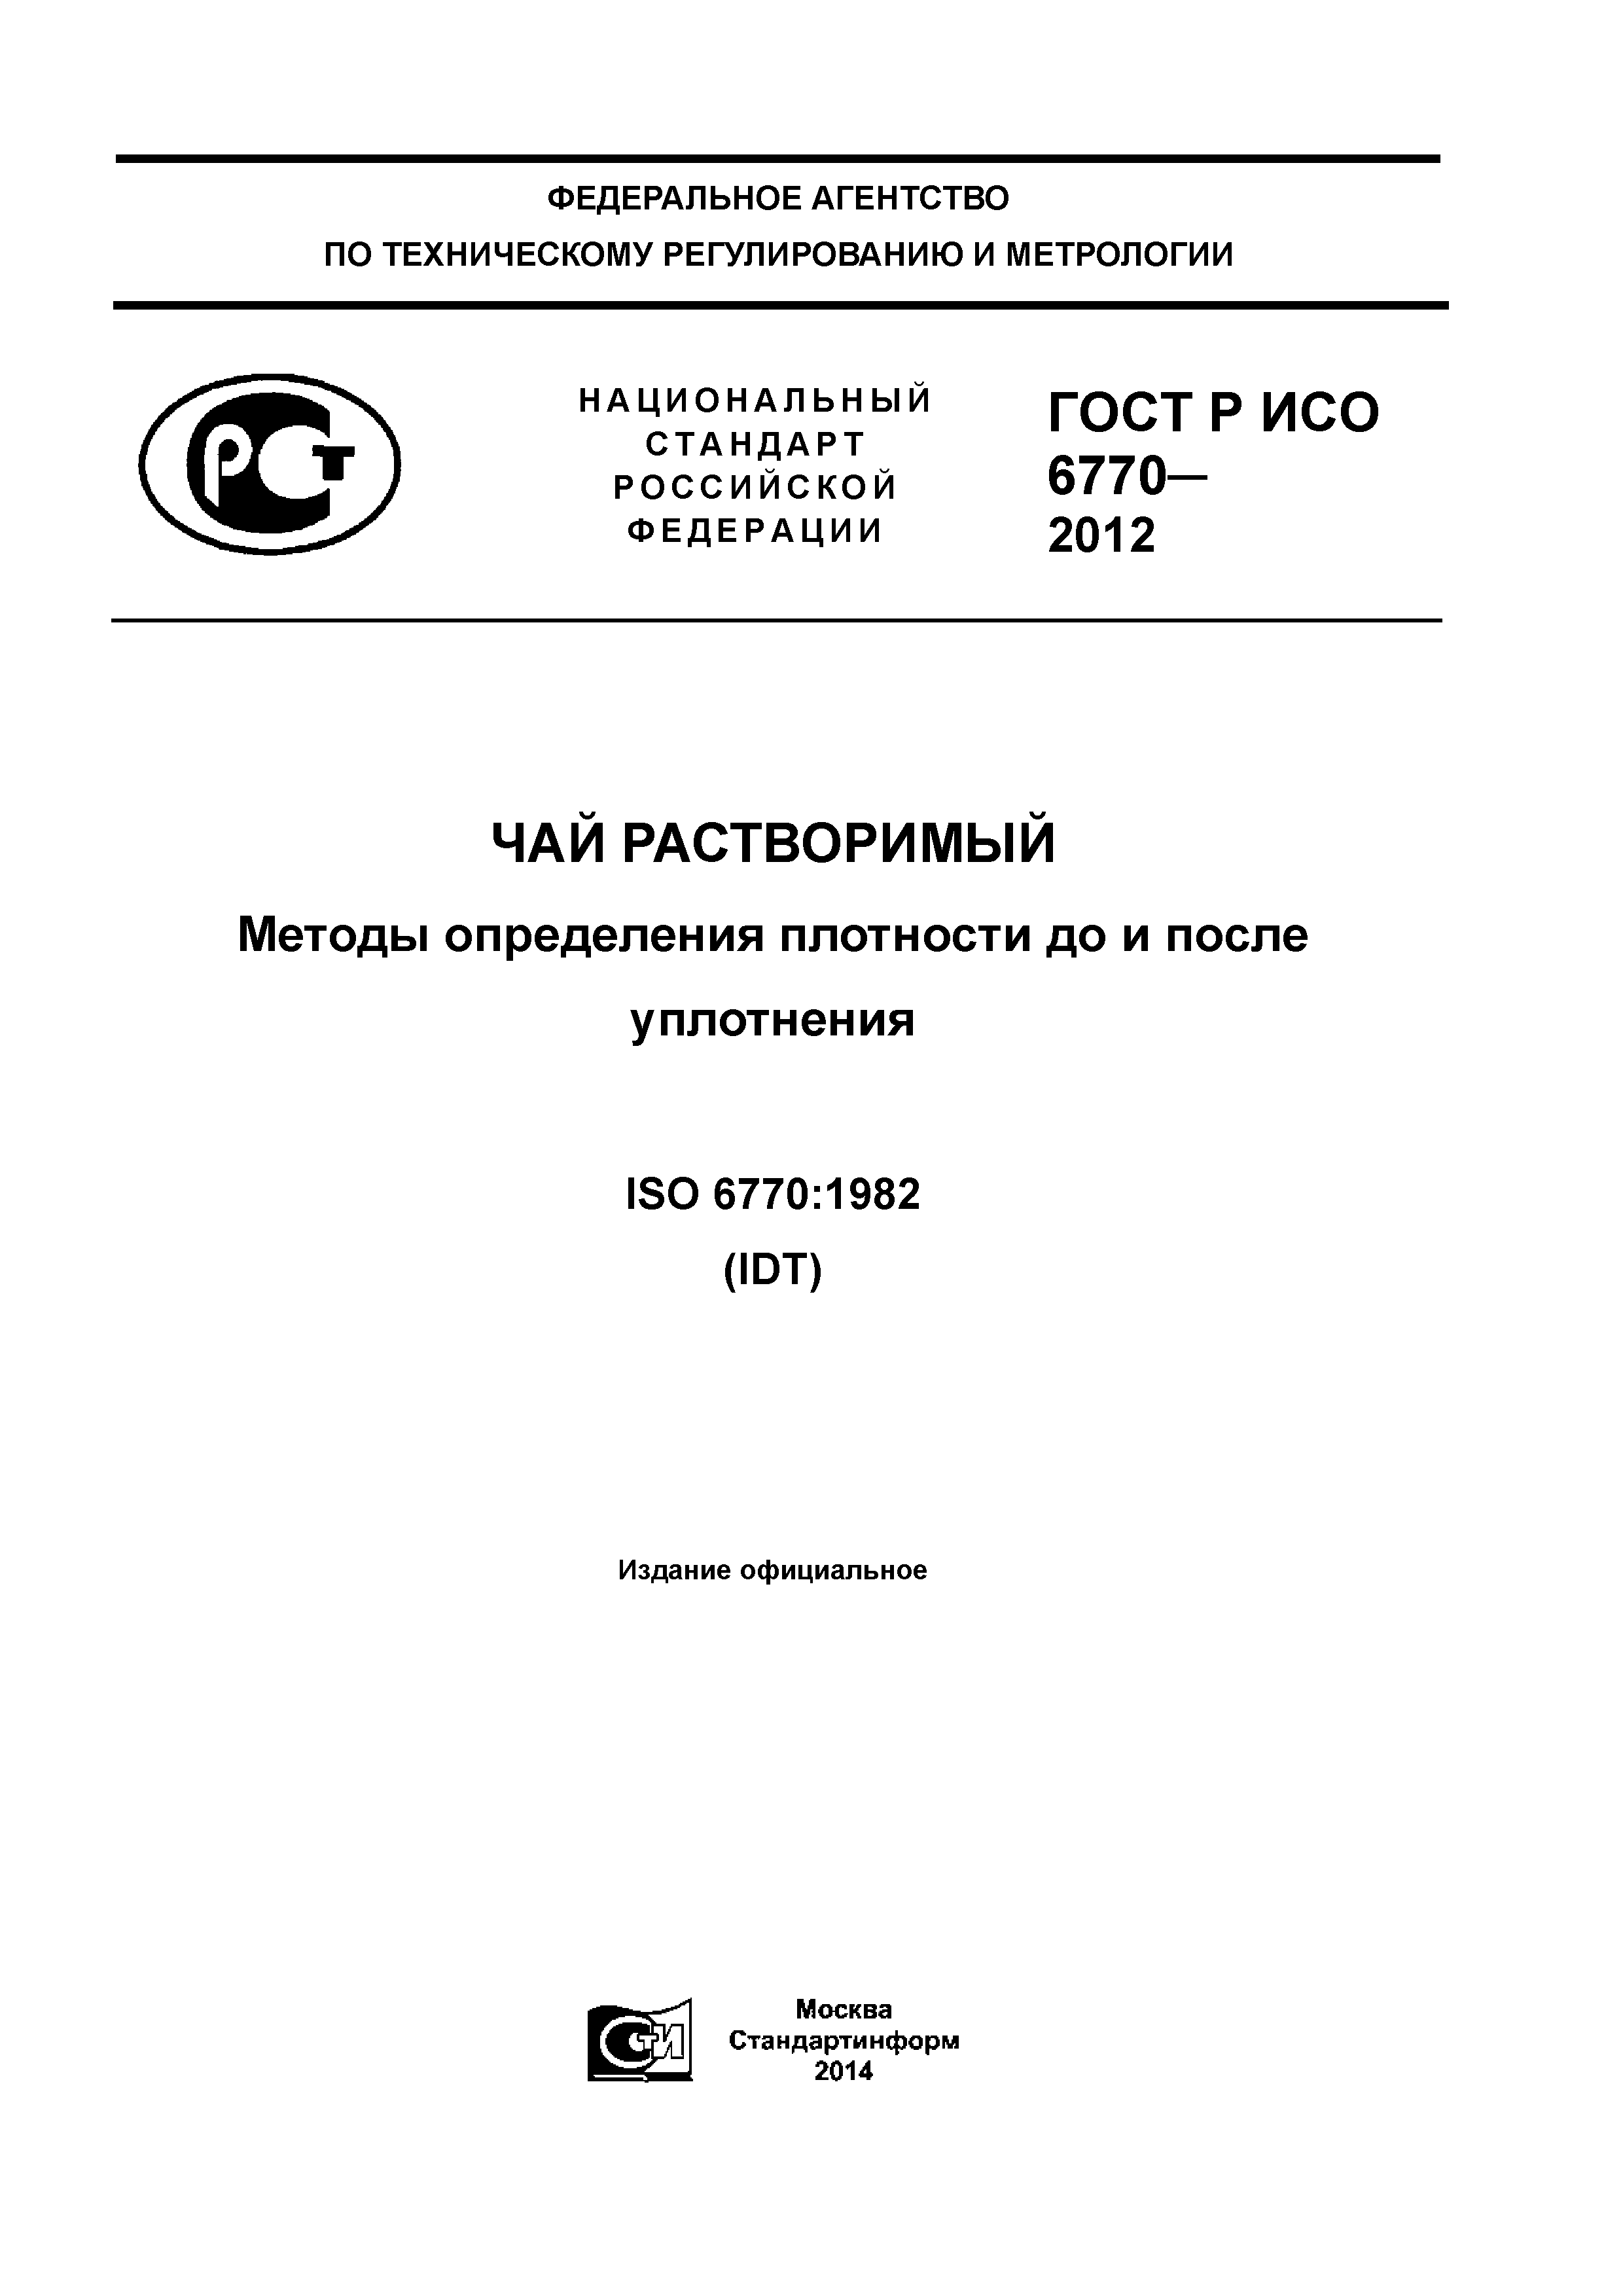 ГОСТ Р ИСО 6770-2012